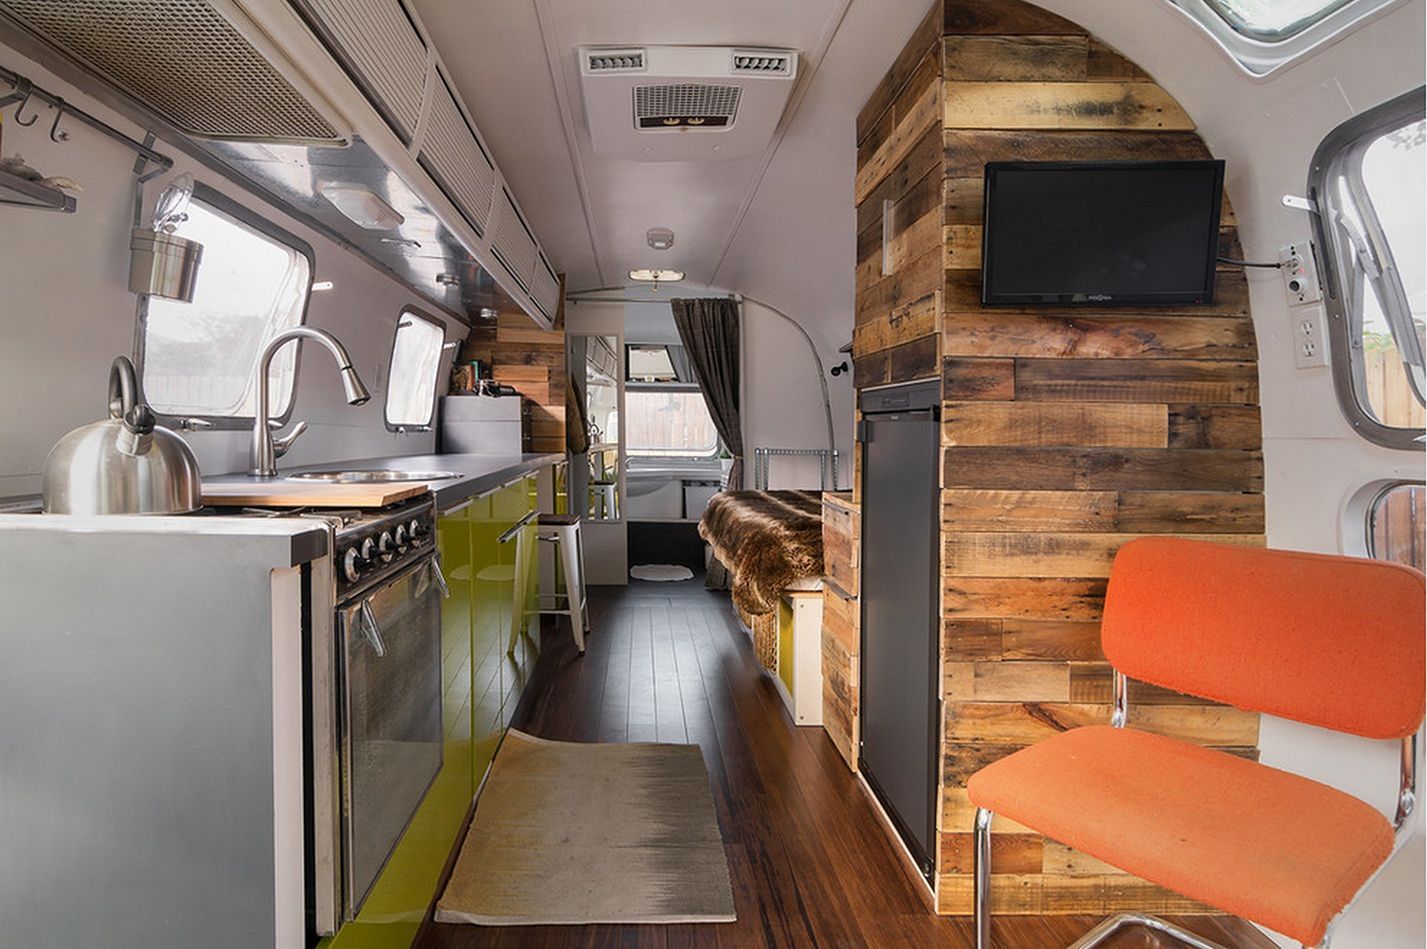 Airstream interior with unused wood